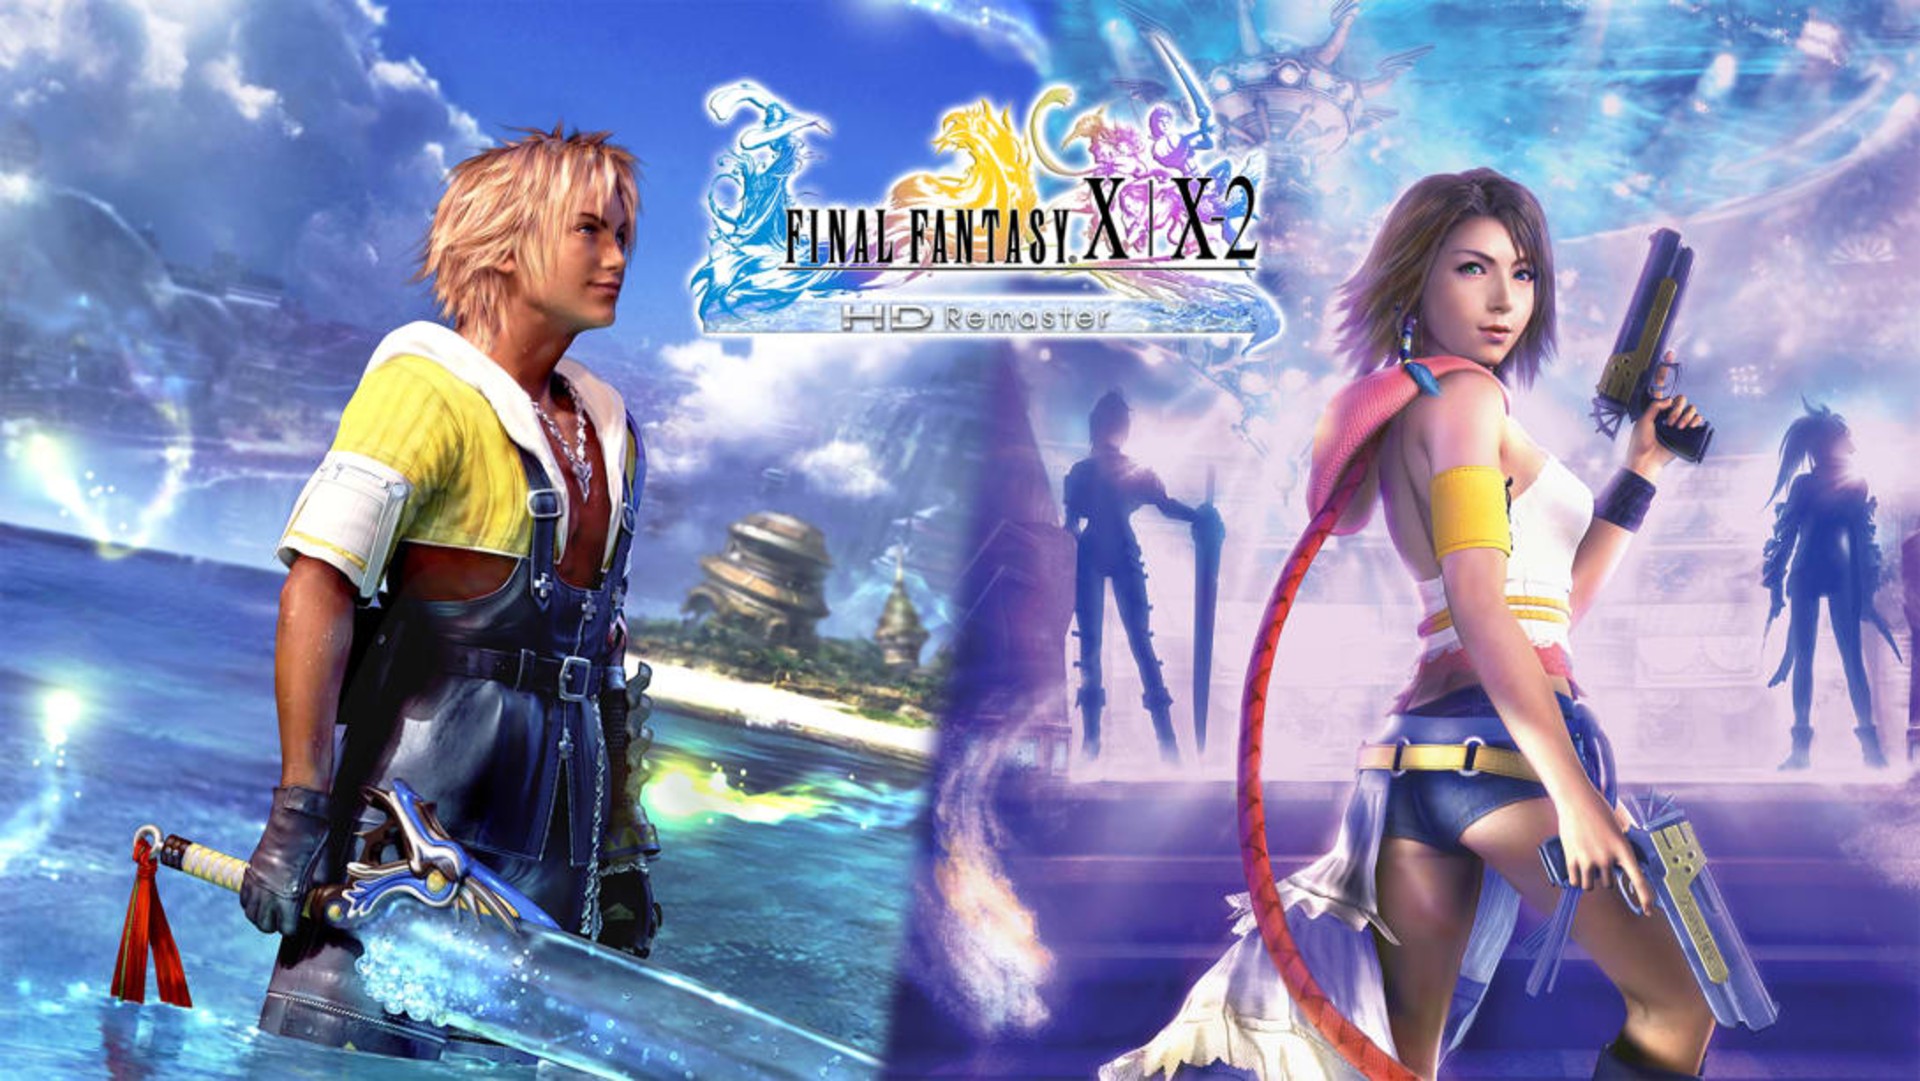 มีความเป็นไปได้ที่จะเห็น Final Fantasy X-3 ในอนาคต